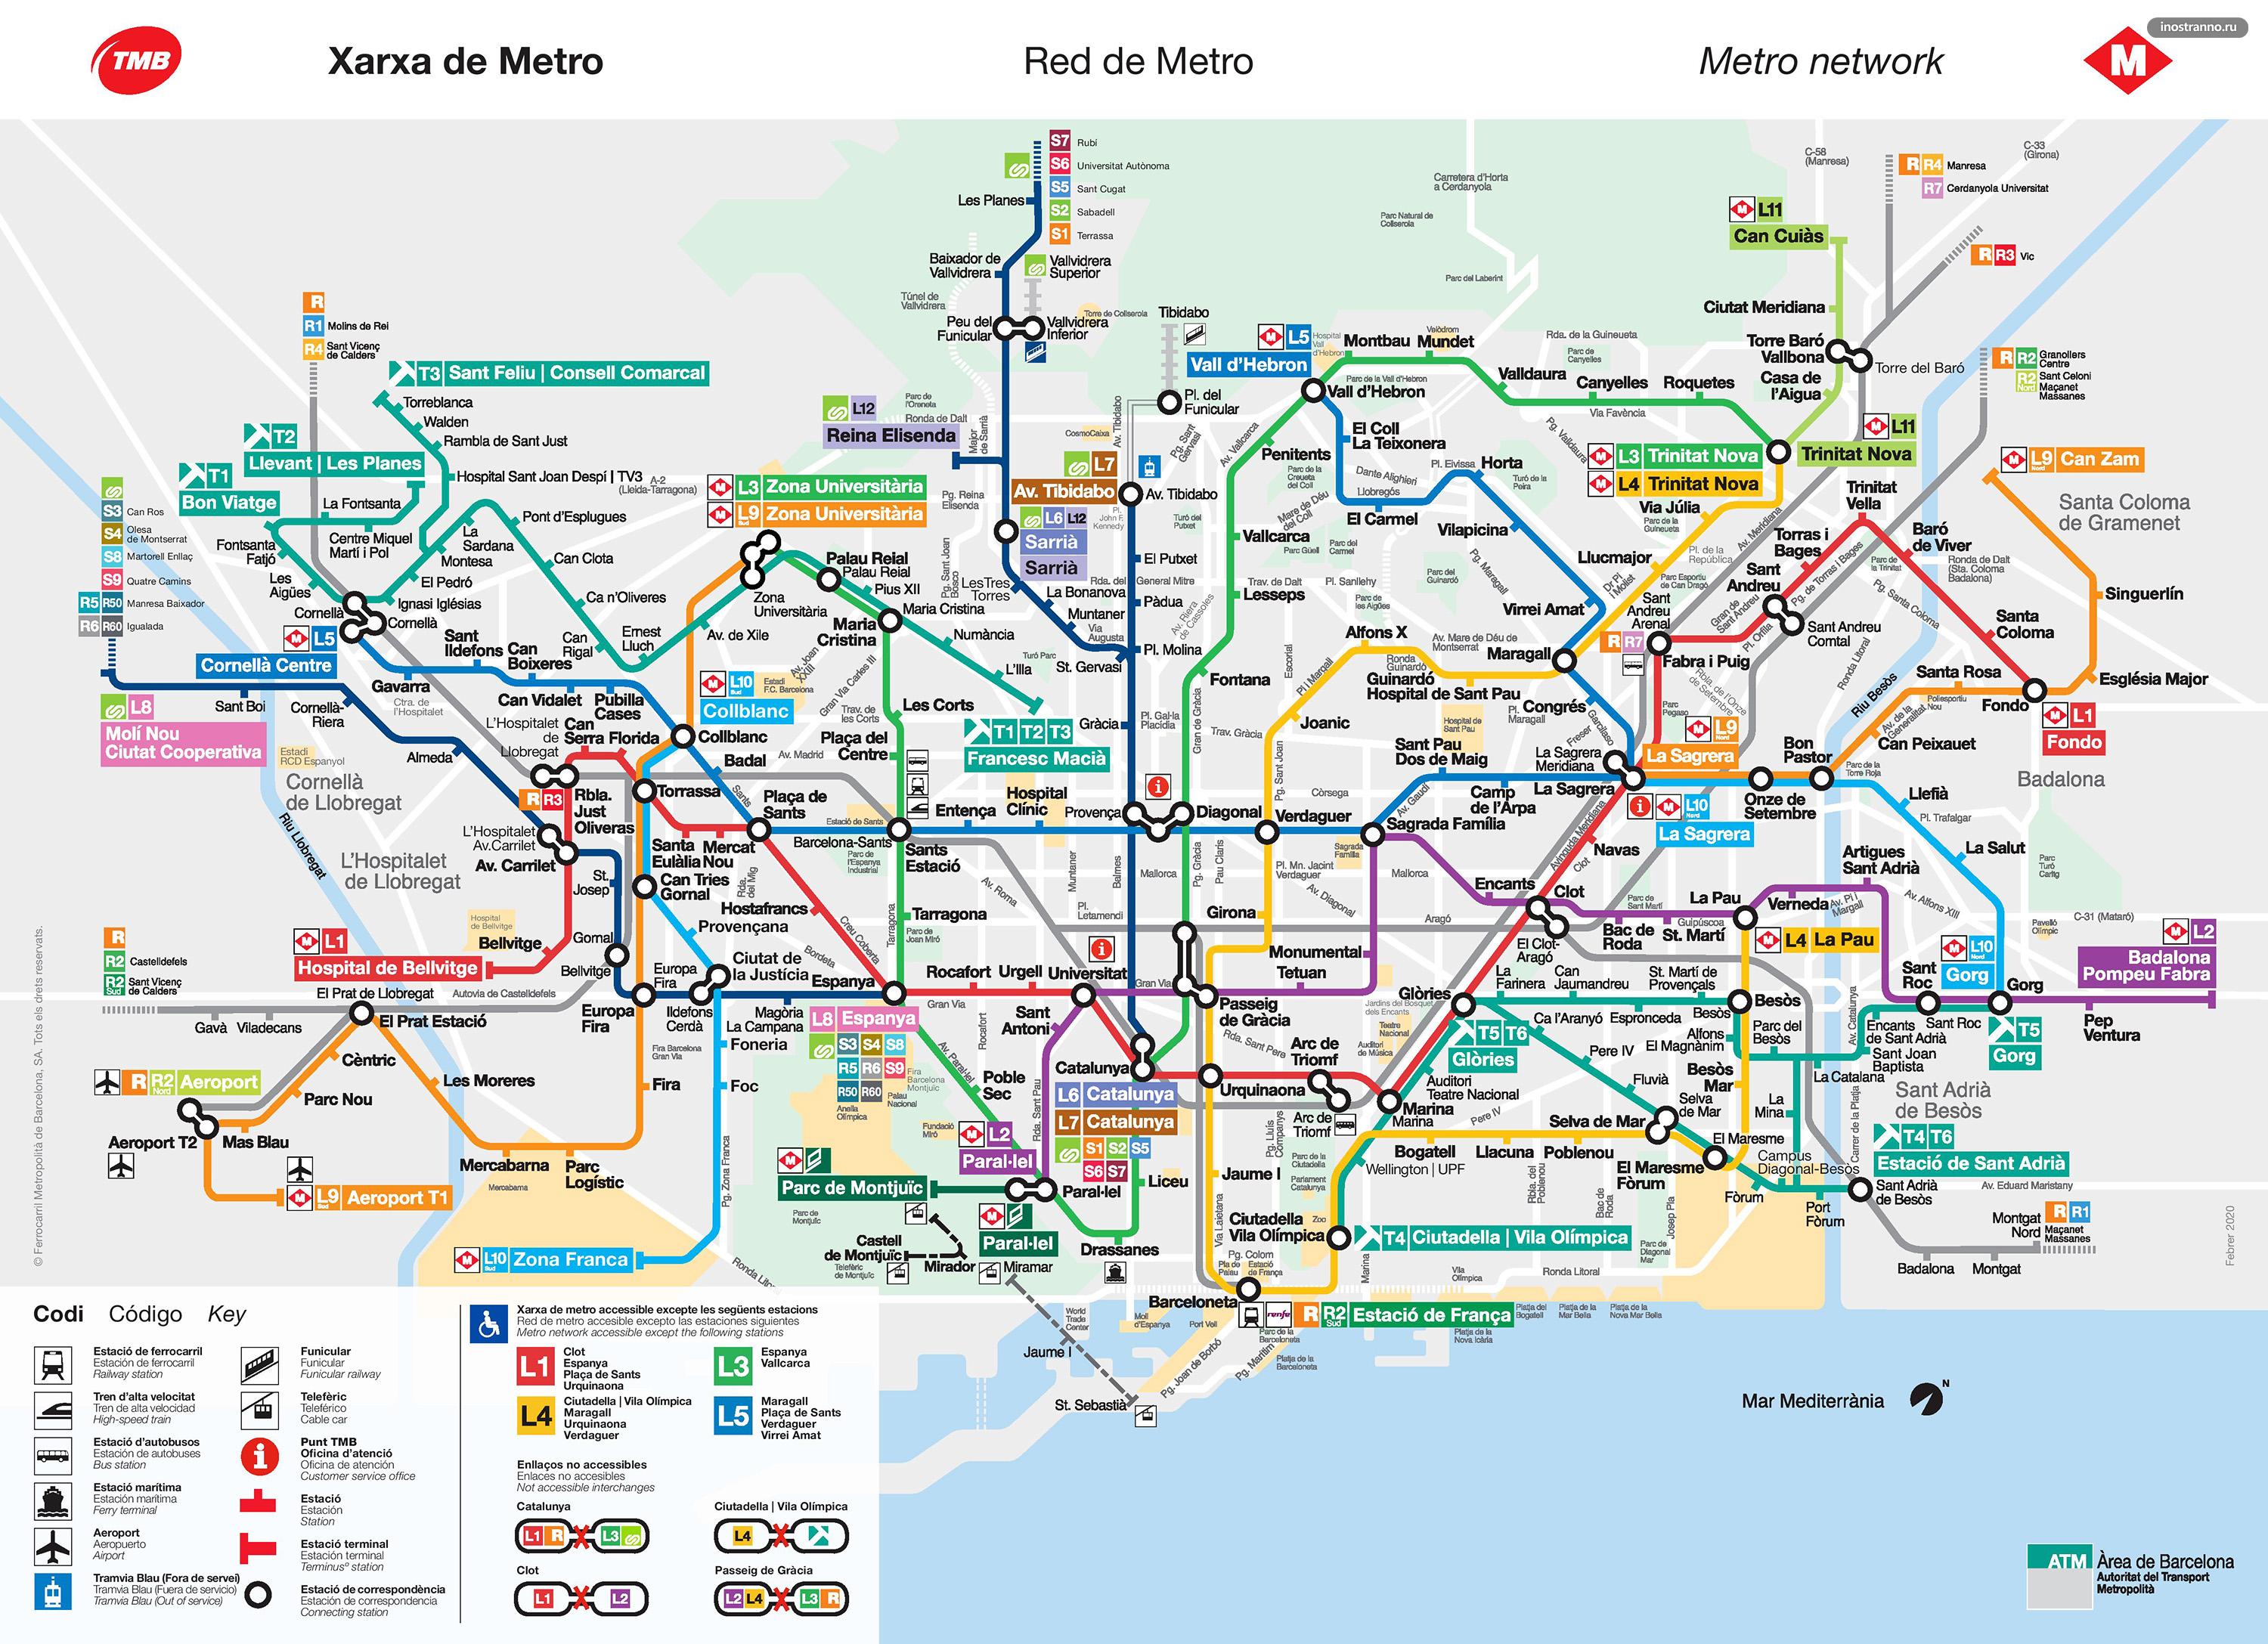 Карта схема метро, электричек и трамваев Барселоны